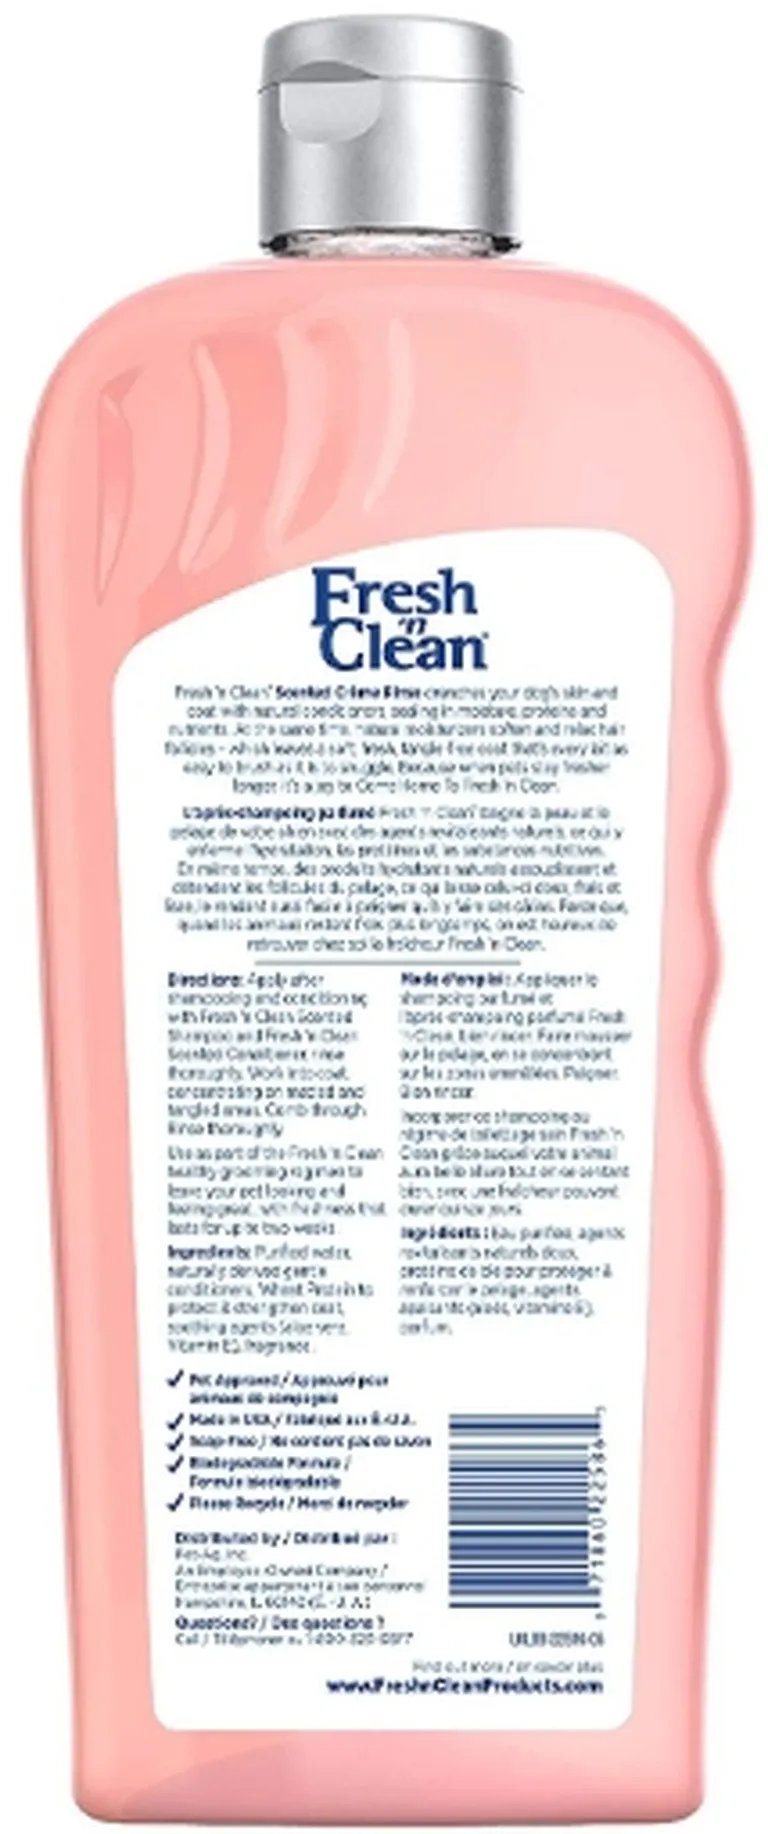 Fresh n Clean Creme Rinse Fresh Clean Scent Photo 2